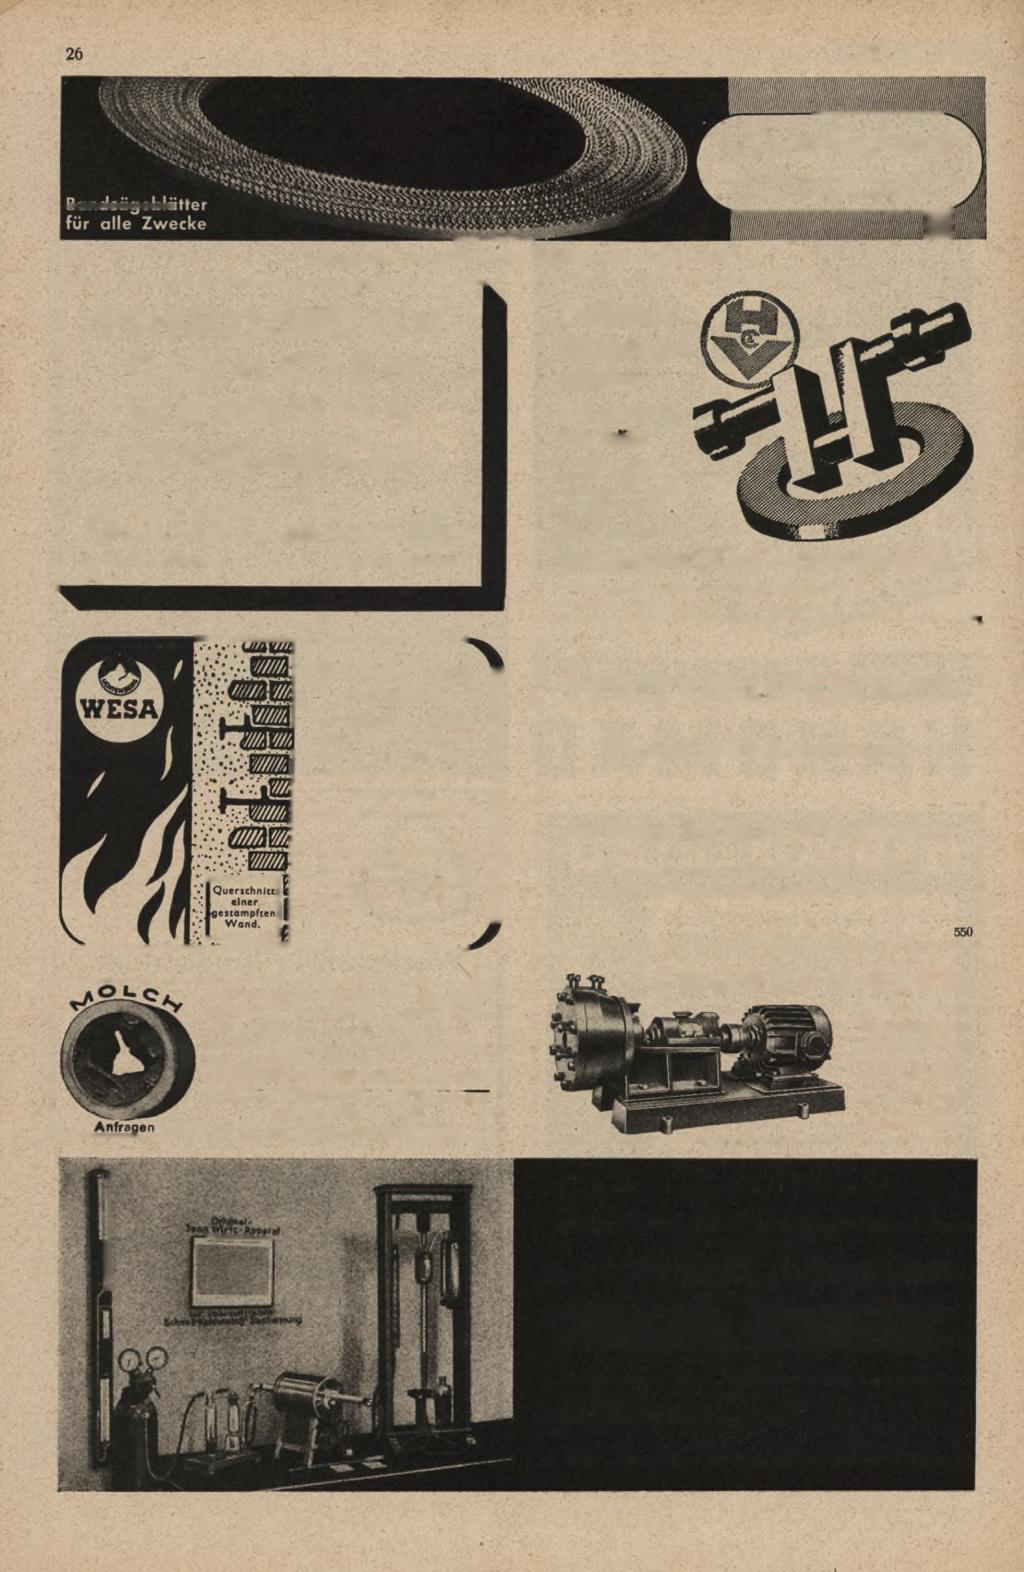 ST A H L U N D EISEN B. Nr. 4, 27. Jan. 1944 JLciLu-J Anfragen zu richten an Verlag Stahleisen m. b. H., Pössneck.